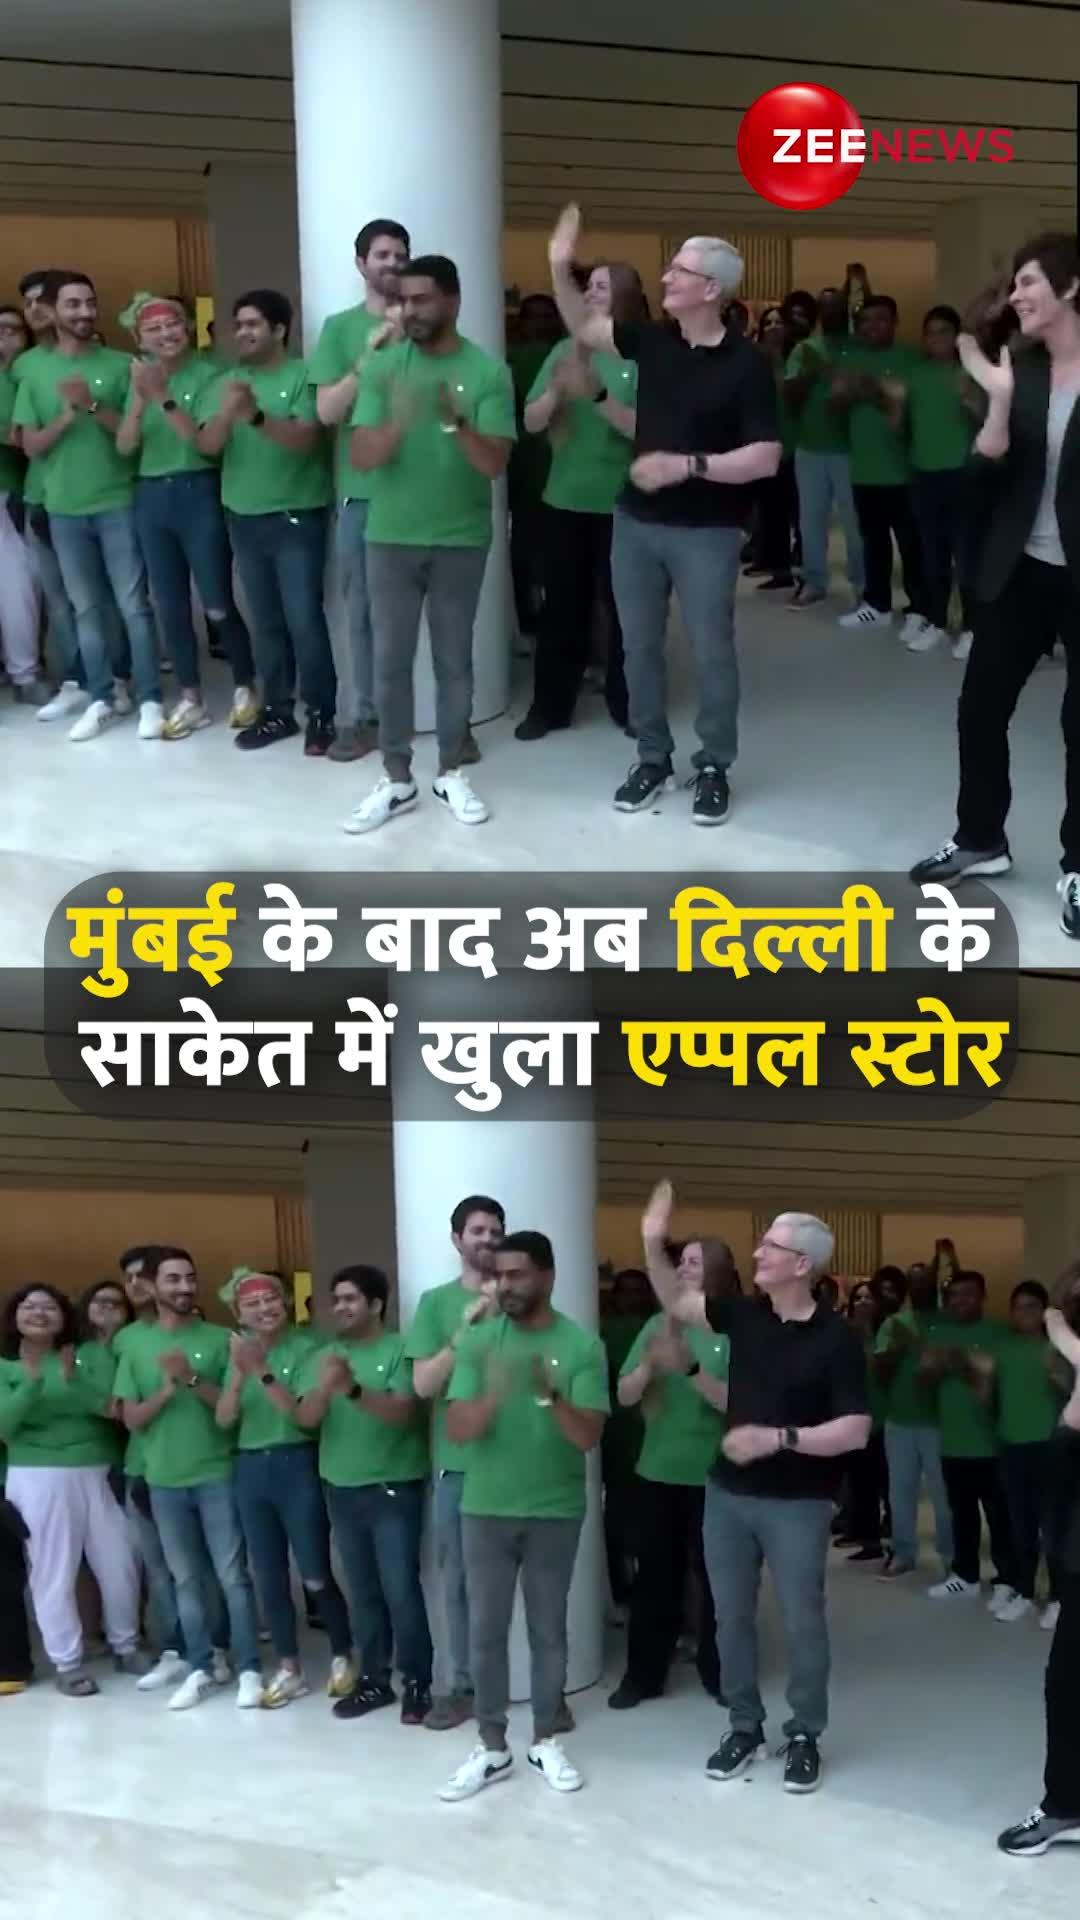 मुंबई के बाद अब दिल्ली के साकेत में खुला एप्पल स्टोर, CEO टिम कुक ने किया उद्घाटन